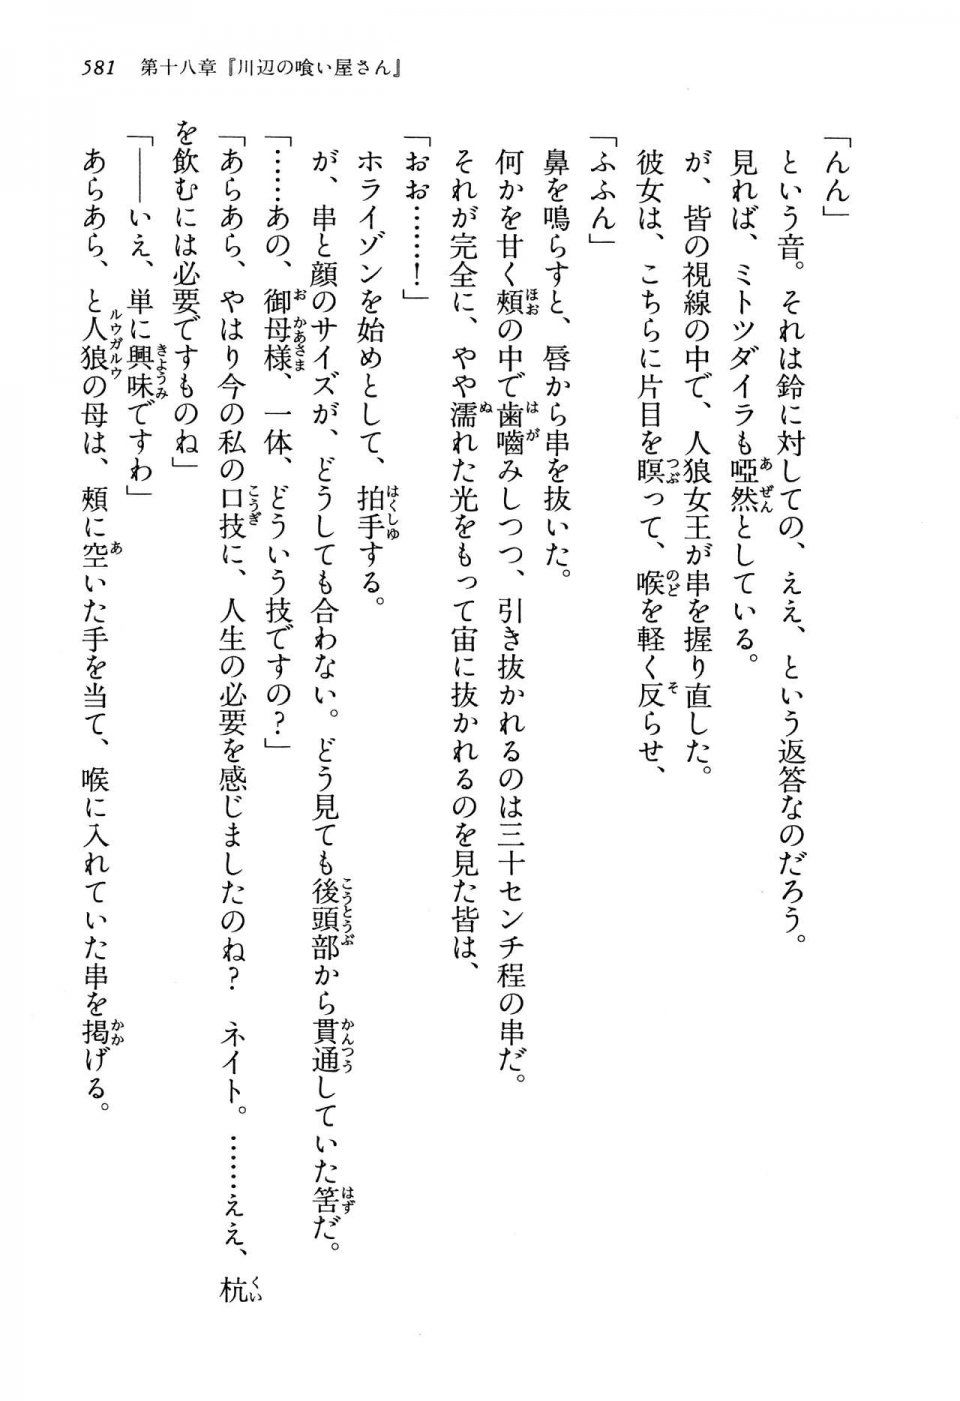 Kyoukai Senjou no Horizon LN Vol 13(6A) - Photo #581